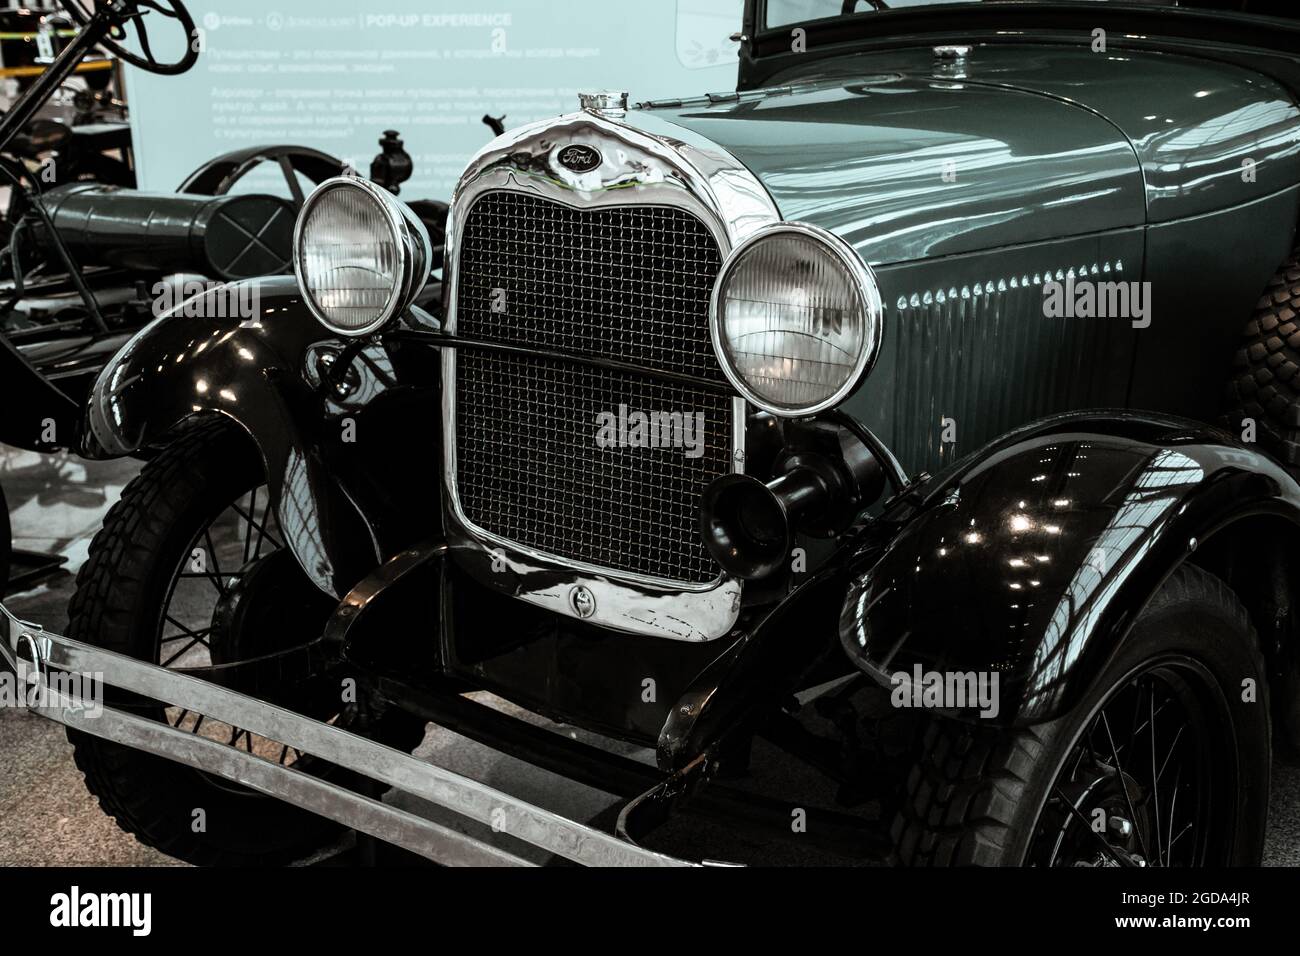 4. Juni 2019, Moskau, Russland: Fahrzeuggrill und Scheinwerfer des amerikanischen Autos Ford A Phaeton 1929. Klassische Retro-Autos der 1920er Jahre. Stockfoto